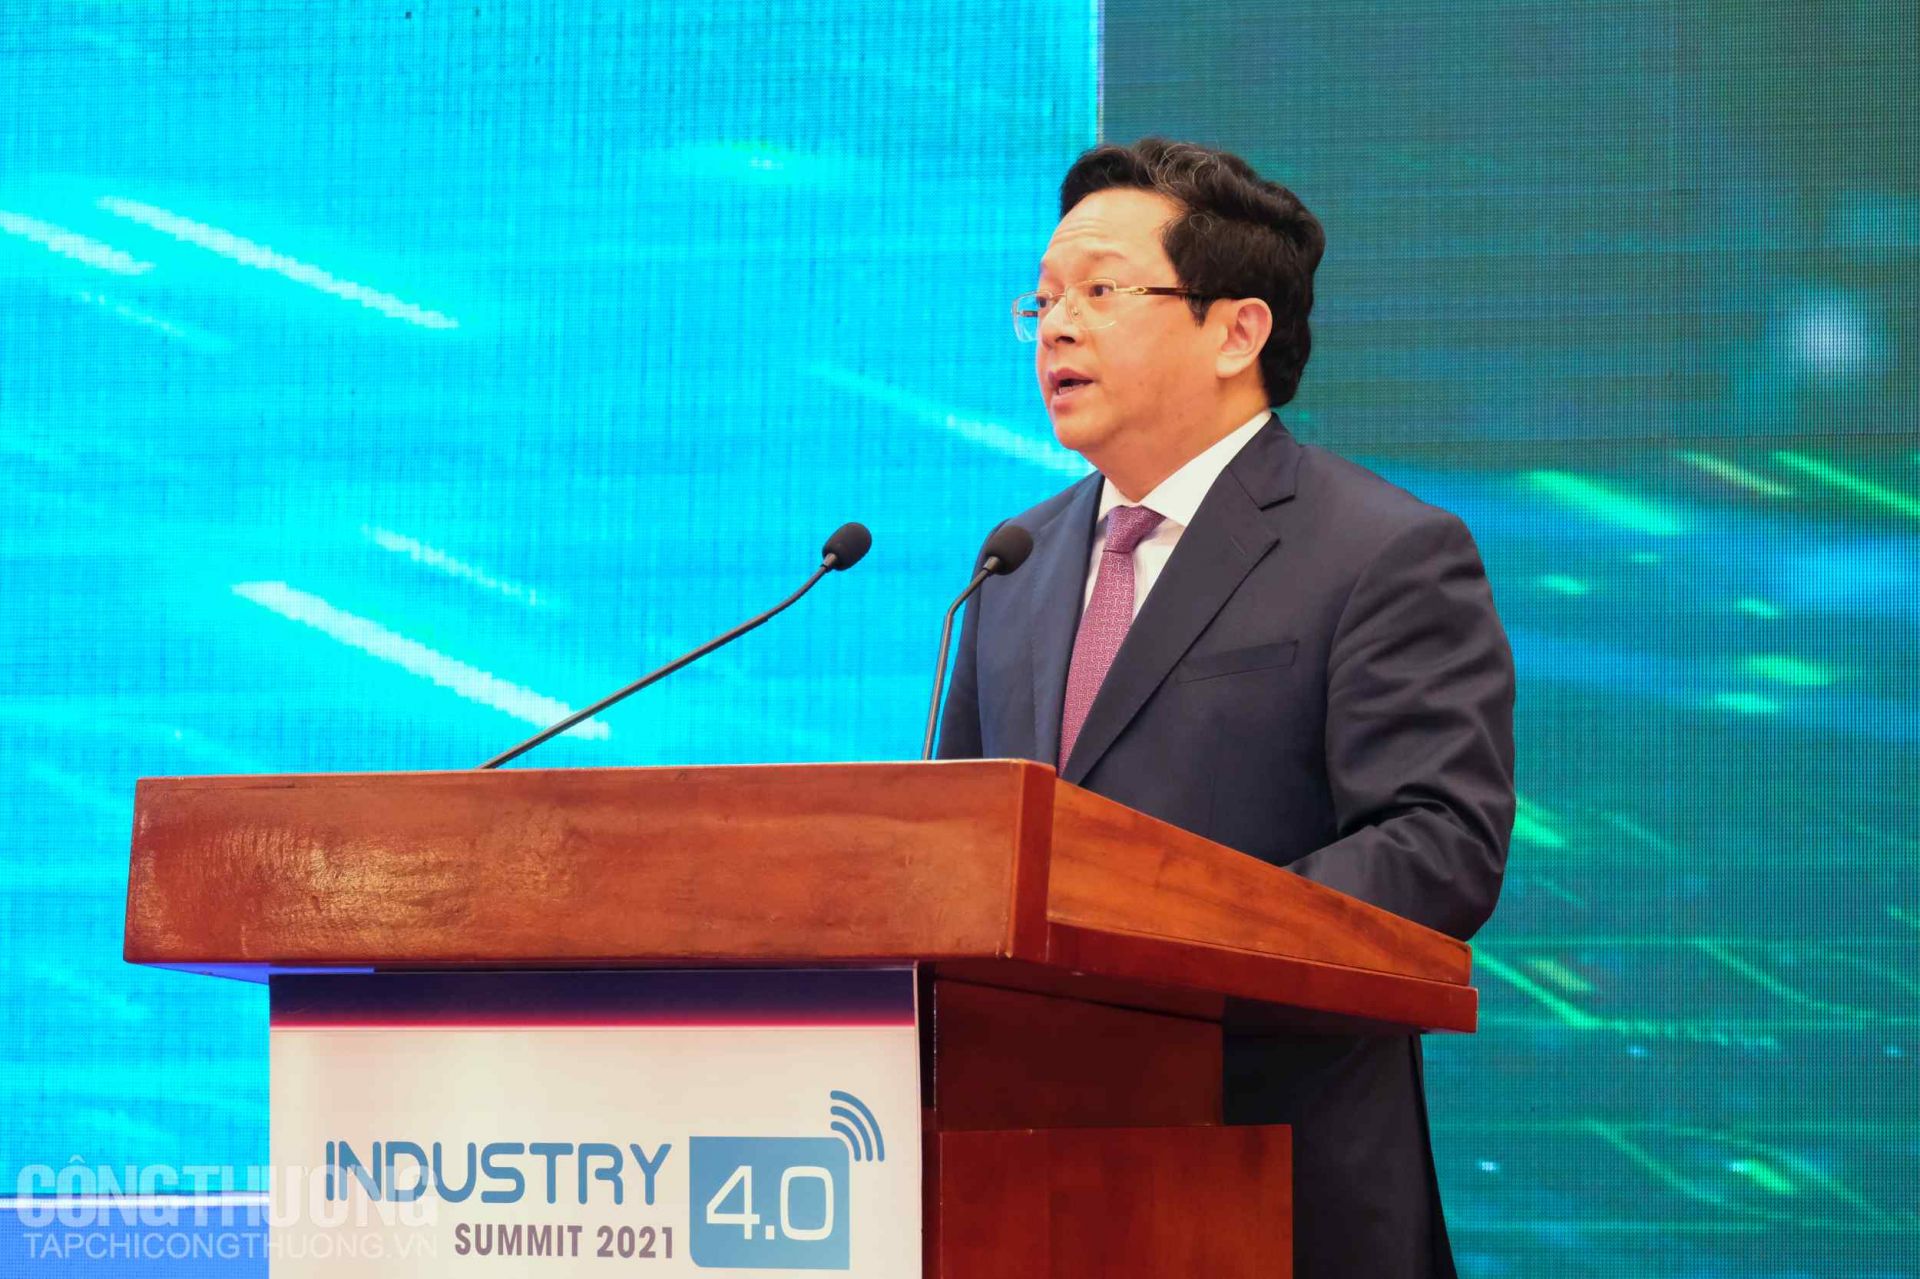 Ông Nguyễn Đức Hiển - Phó Trưởng Ban Kinh tế Trung ương phát biểu khai mạc Hội thảo chuyên đề “Phát triển sản xuất thông minh trong tiến trình công nghiệp hóa, hiện đại hóa đến năm 2030, tầm nhìn đến năm 2045” diễn ra chiều 9/11/2021